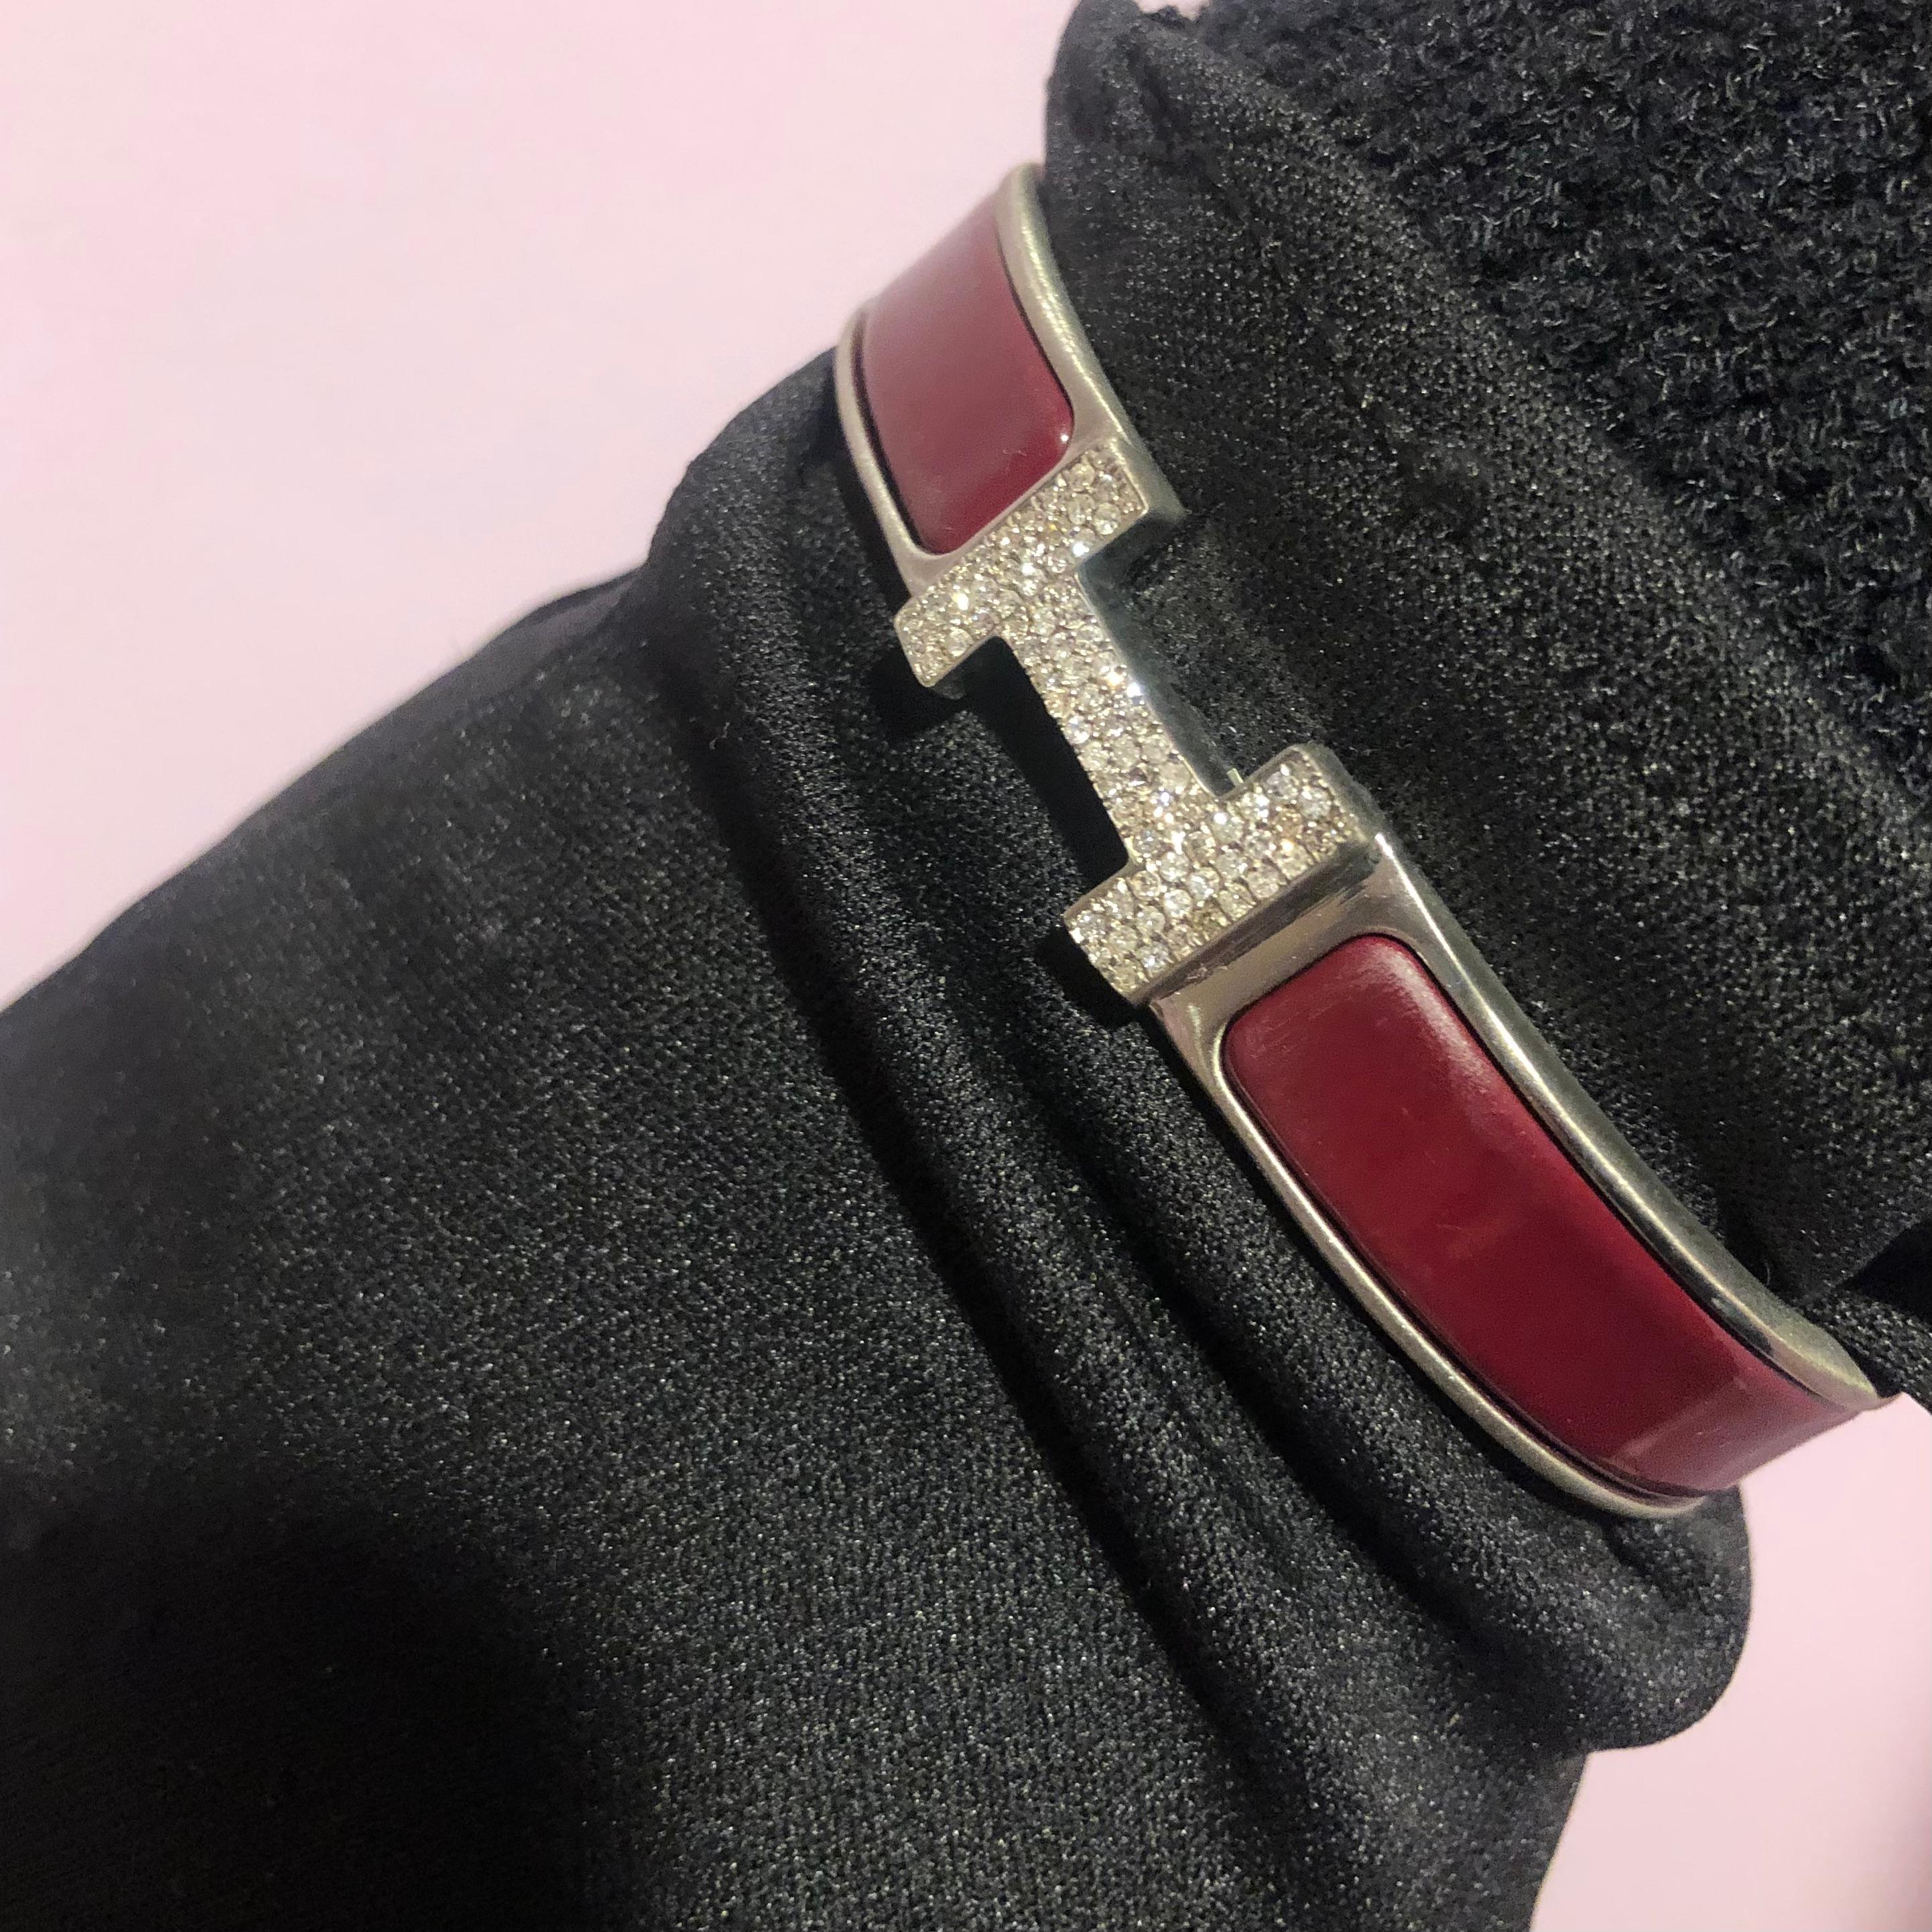 Bracelet Hermes Clic H avec diamants sur mesure, complet avec boîte d'origine.

Un bracelet Hermes Clic H taille GM en rouge et argent est serti à la main d'environ 1,25 carats de diamants naturels SI-I d'origine minière. Les diamants brillent de